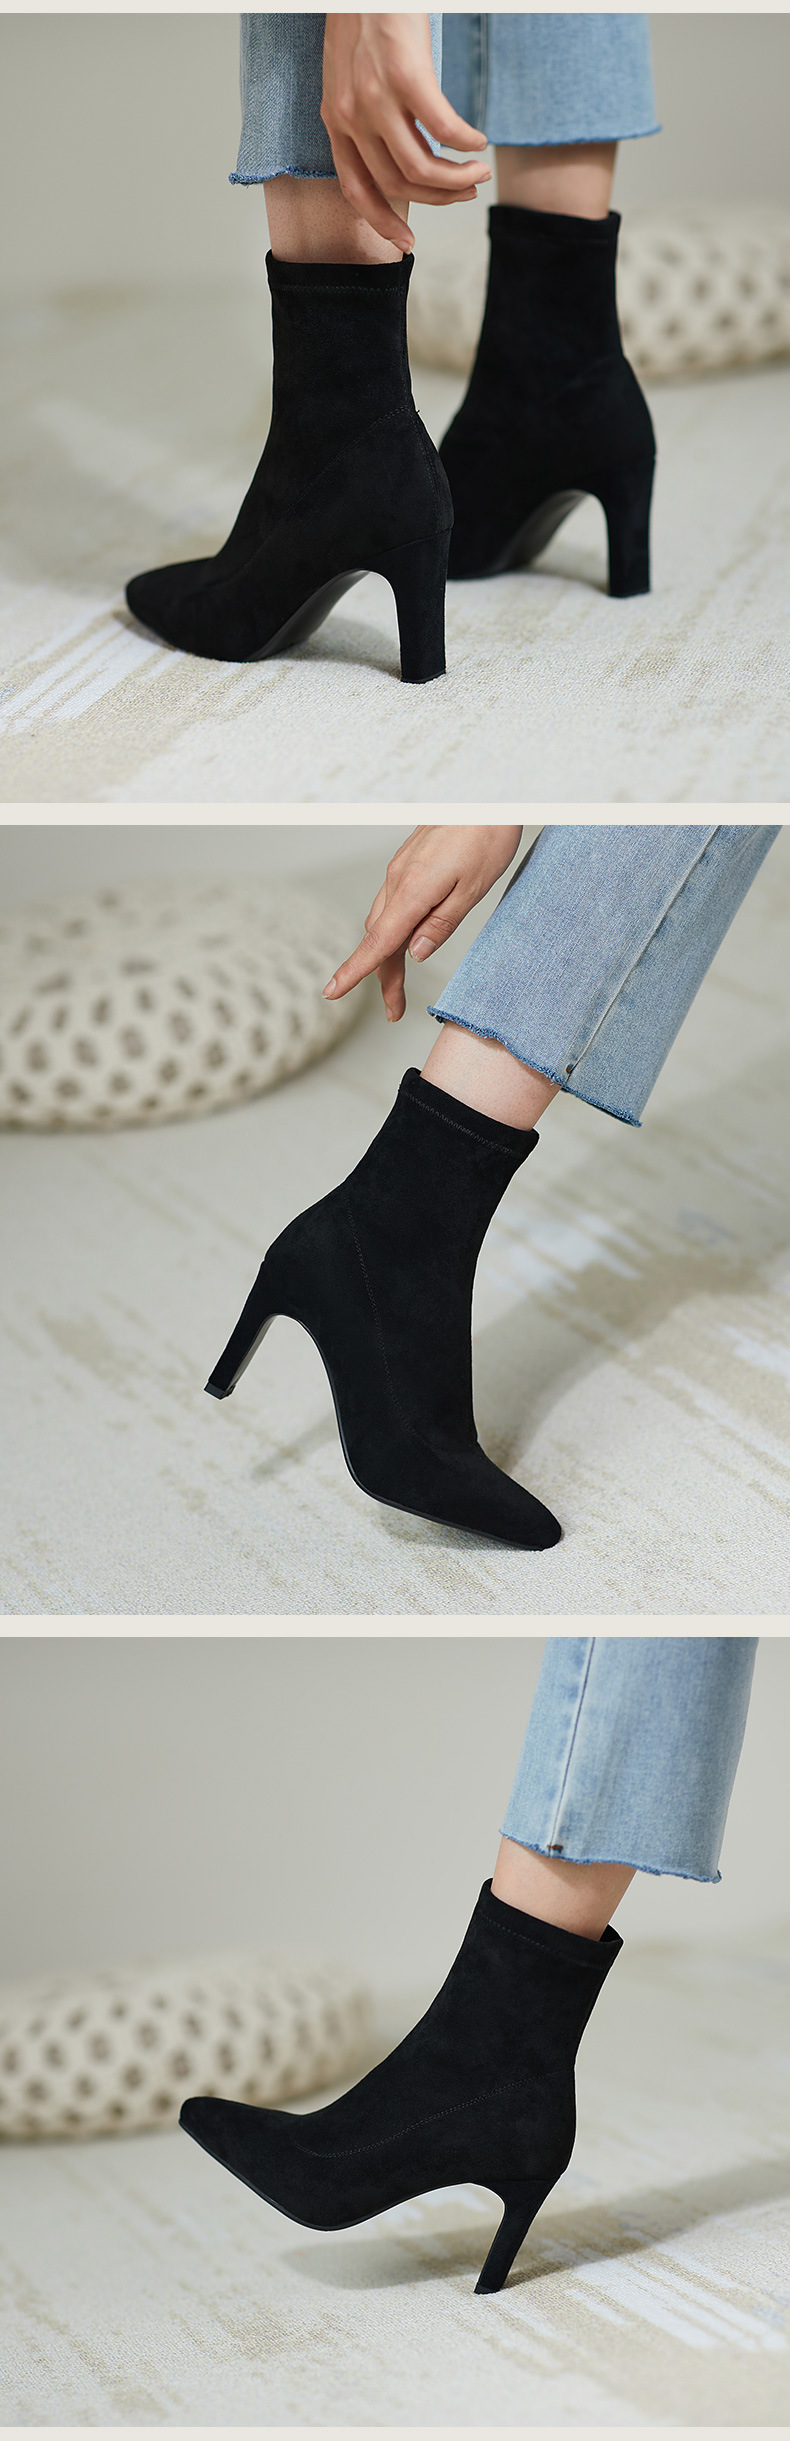 Chiko Tarcisia Pointed Toe Chunky Heels Boots